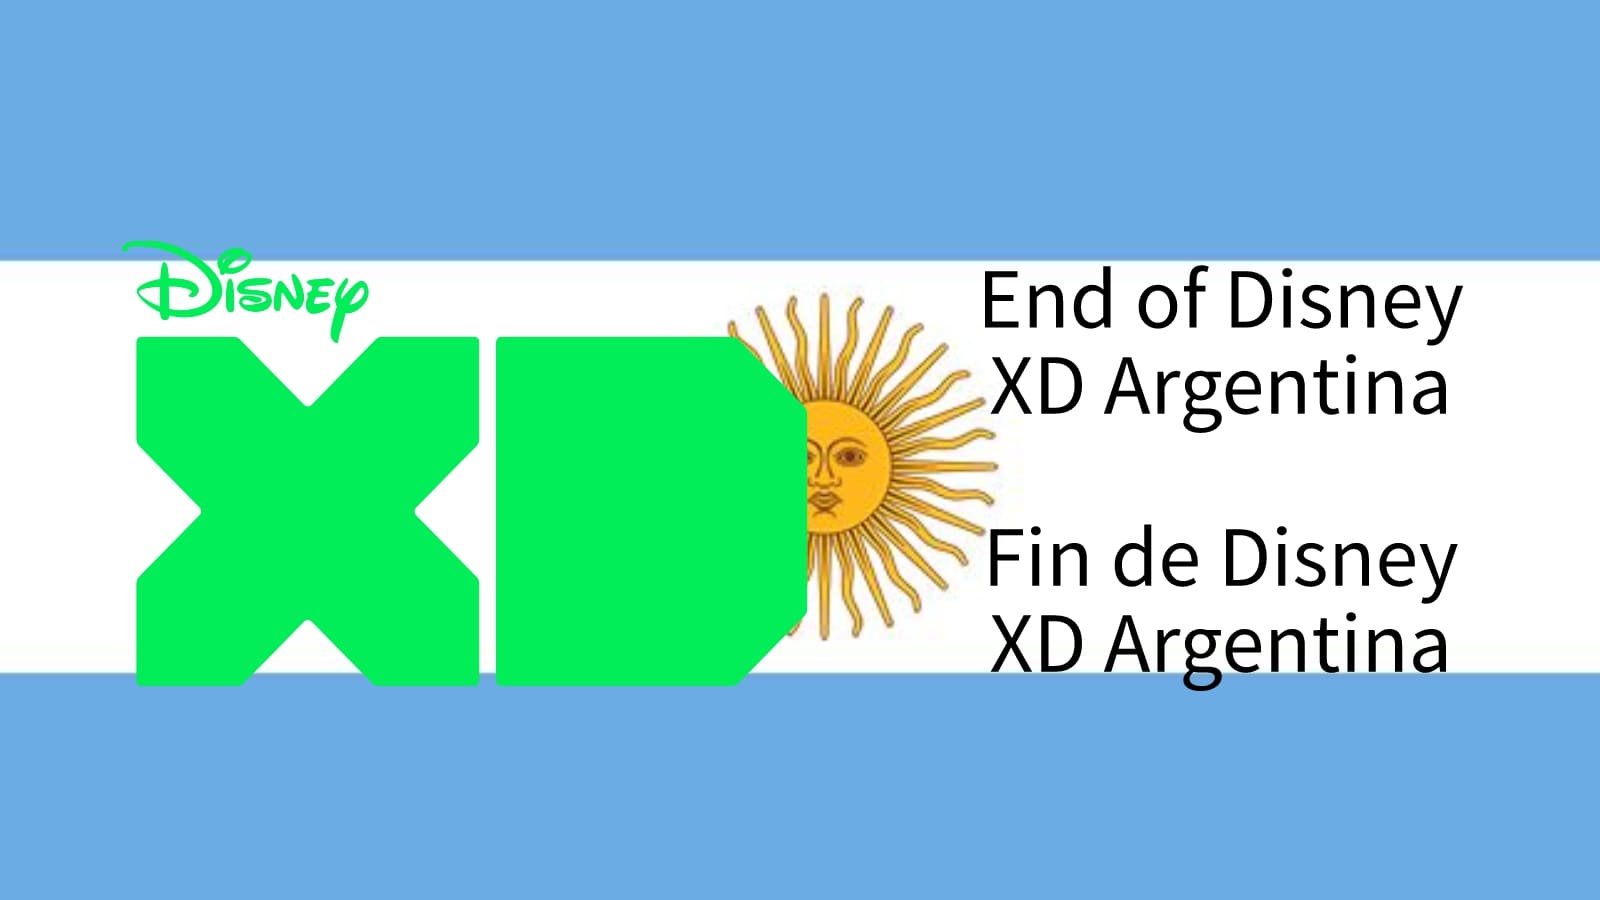 End of Disney XD Argentina/Fin de Disney XD Argentina (April 1, 2022/1 de abril de 2022)